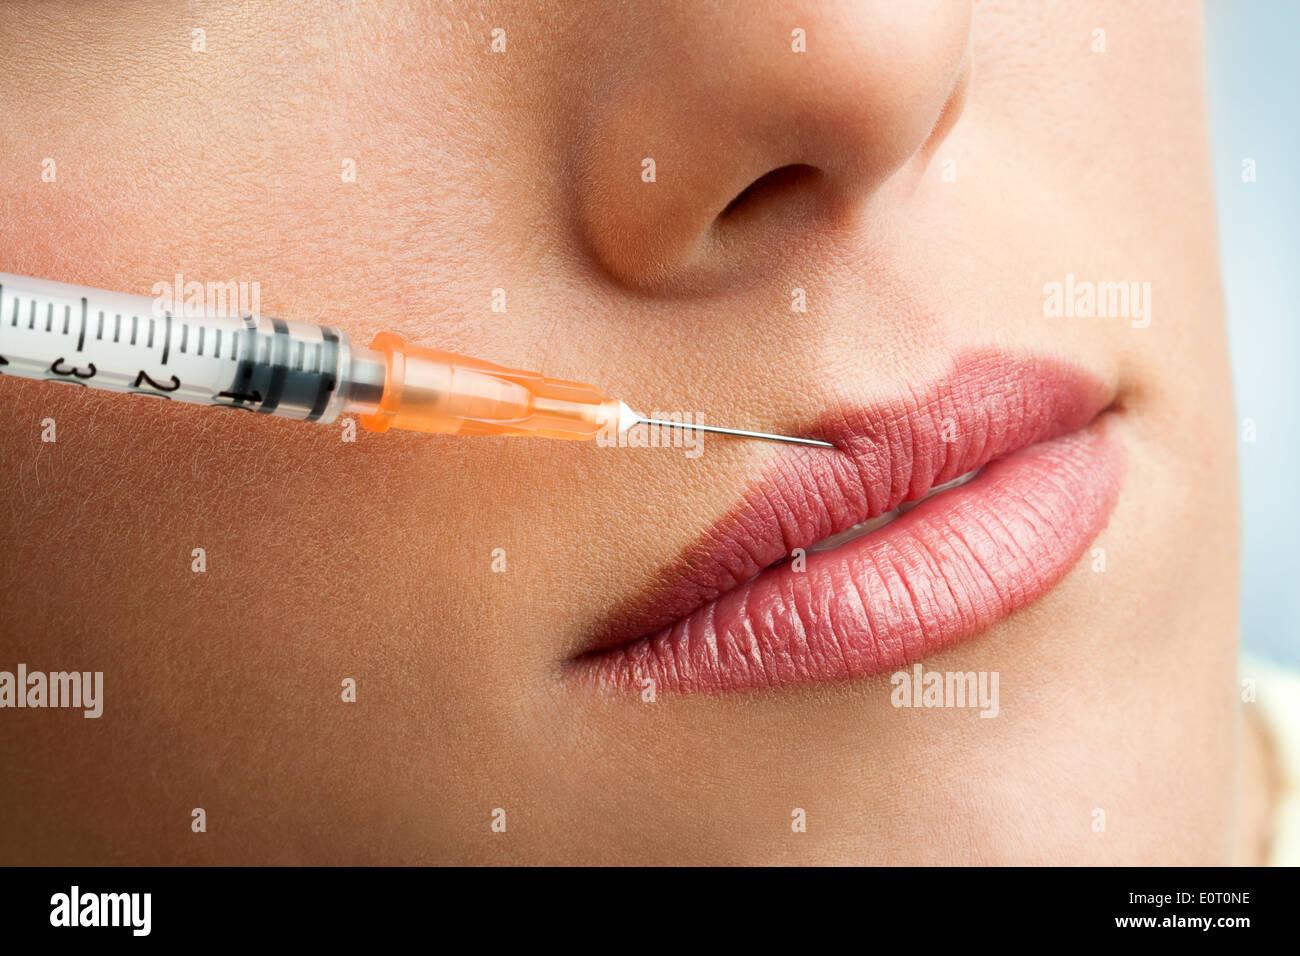 Close up of syringe injecting botox into female lips. Stock Photo